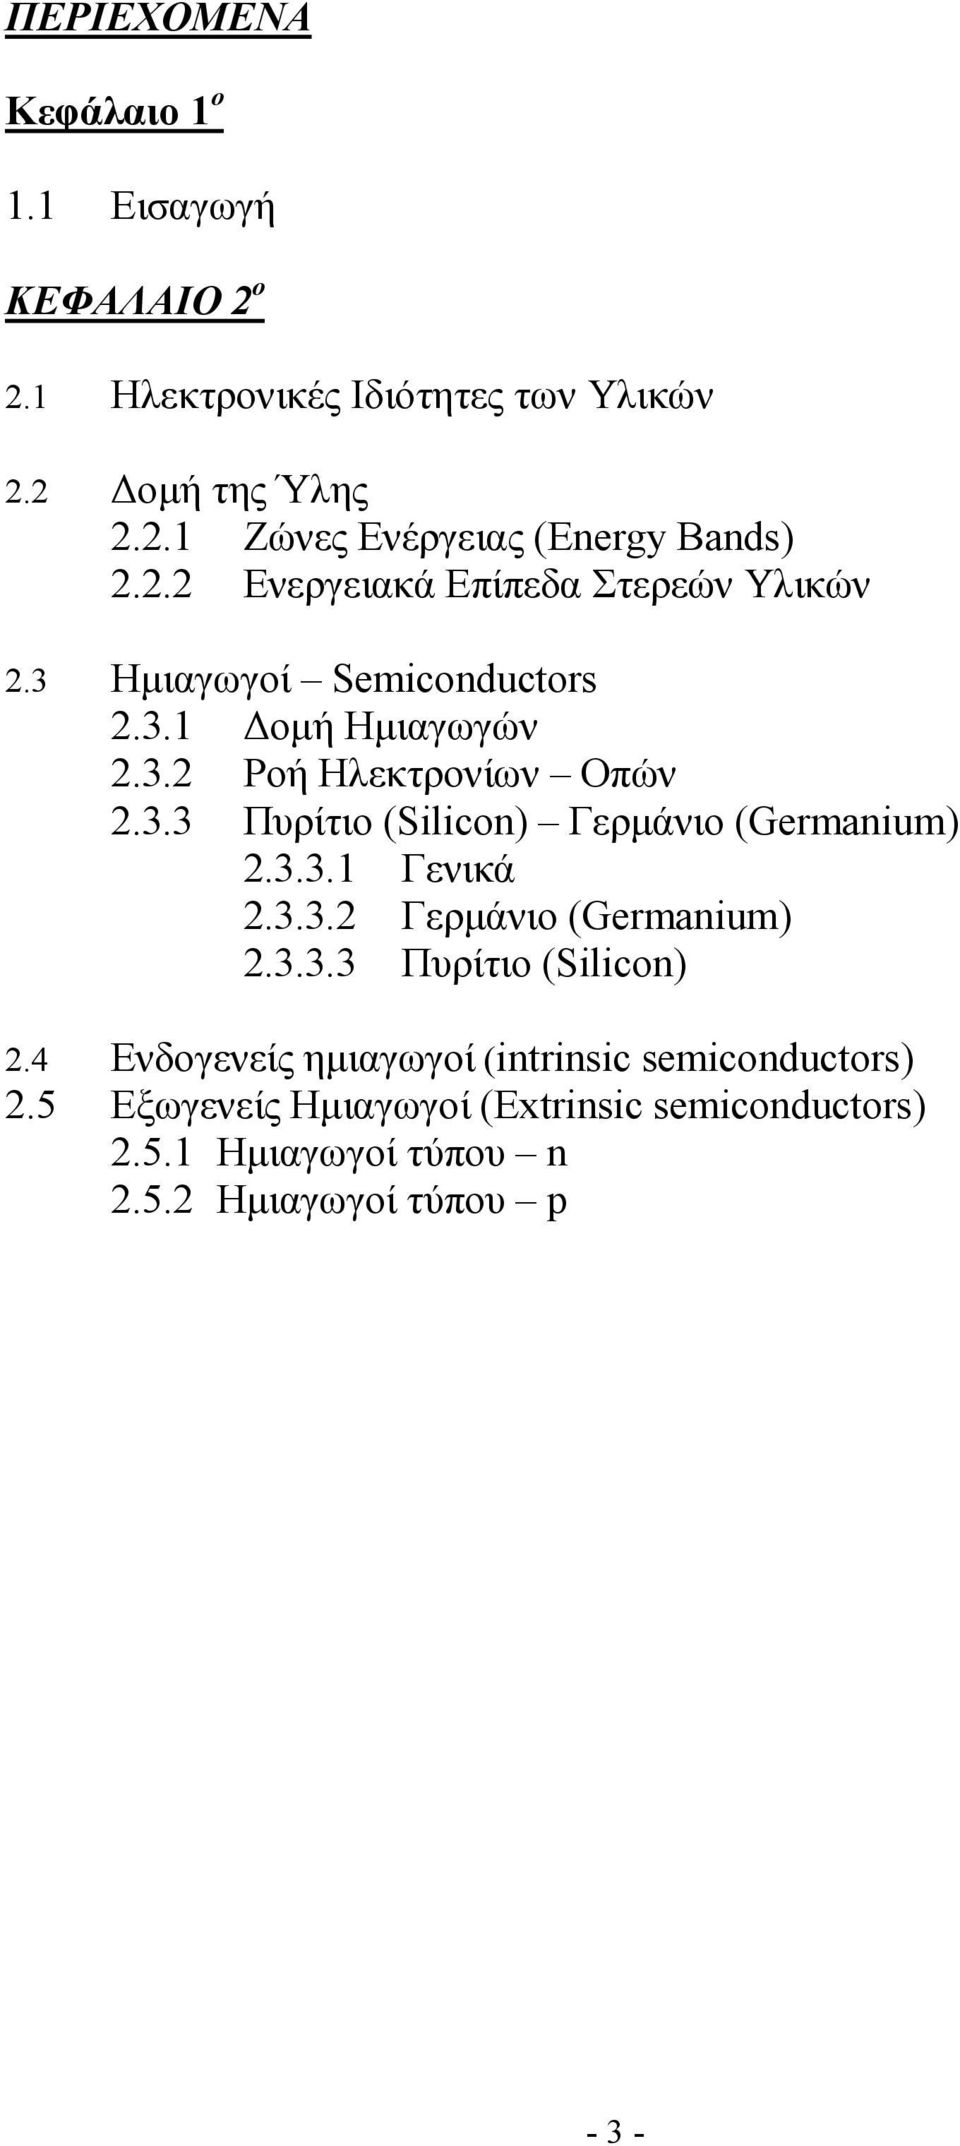 3.3.1 Γενικά 2.3.3.2 Γερµάνιο (Germanium) 2.3.3.3 Πυρίτιο (Silicon) 2.4 Ενδογενείς ηµιαγωγοί (intrinsic semiconductors) 2.